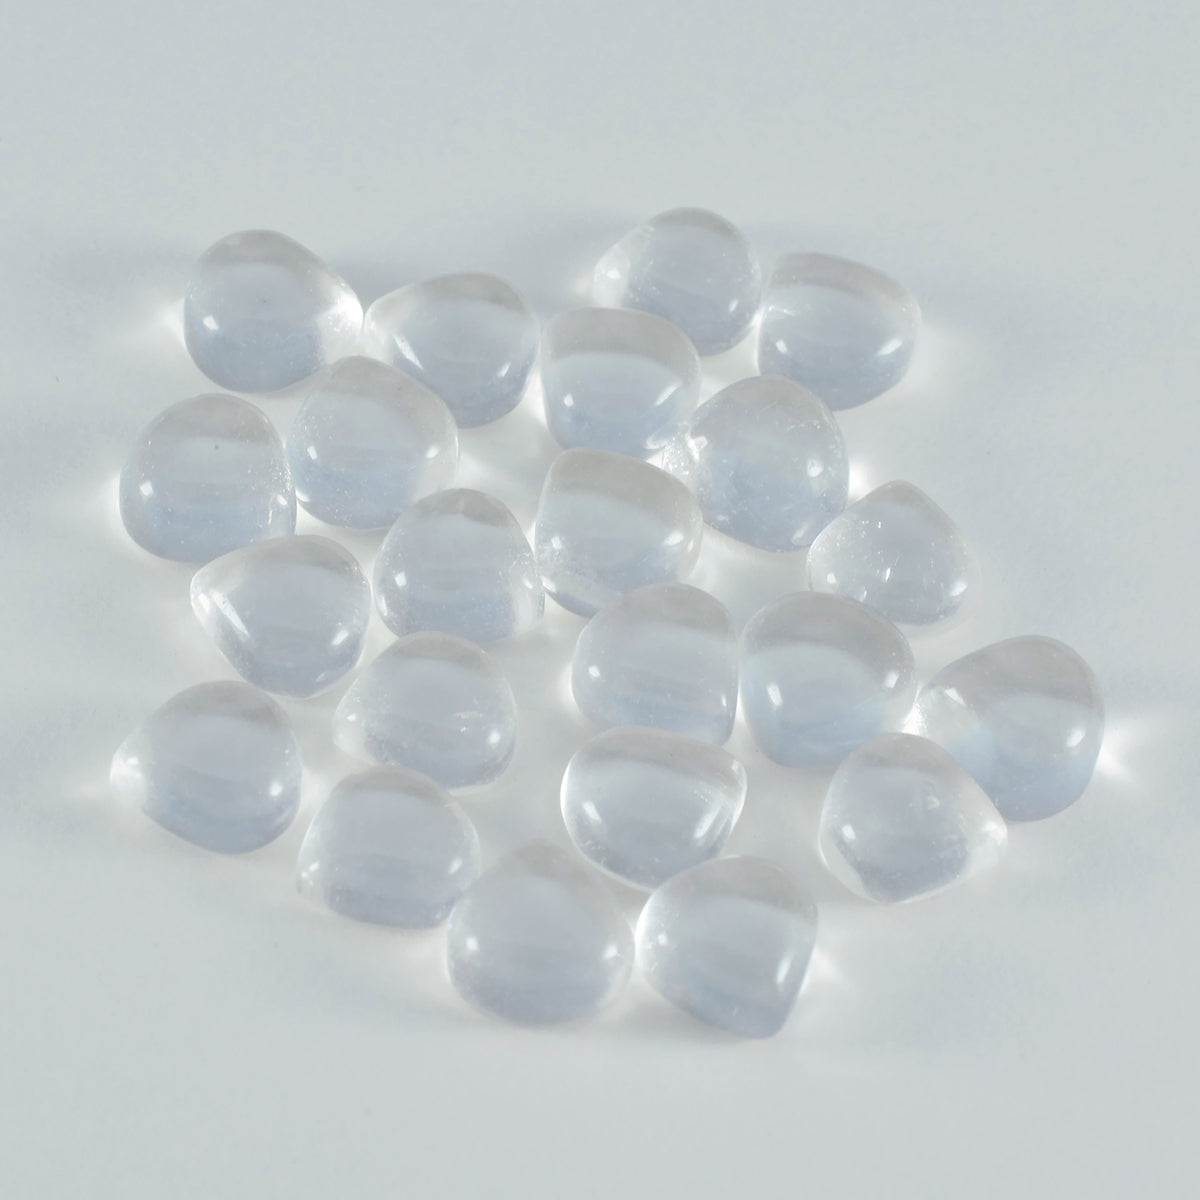 Riyogems 1pc cabochon de quartz en cristal blanc 6x6 mm en forme de coeur pierre précieuse de qualité impressionnante